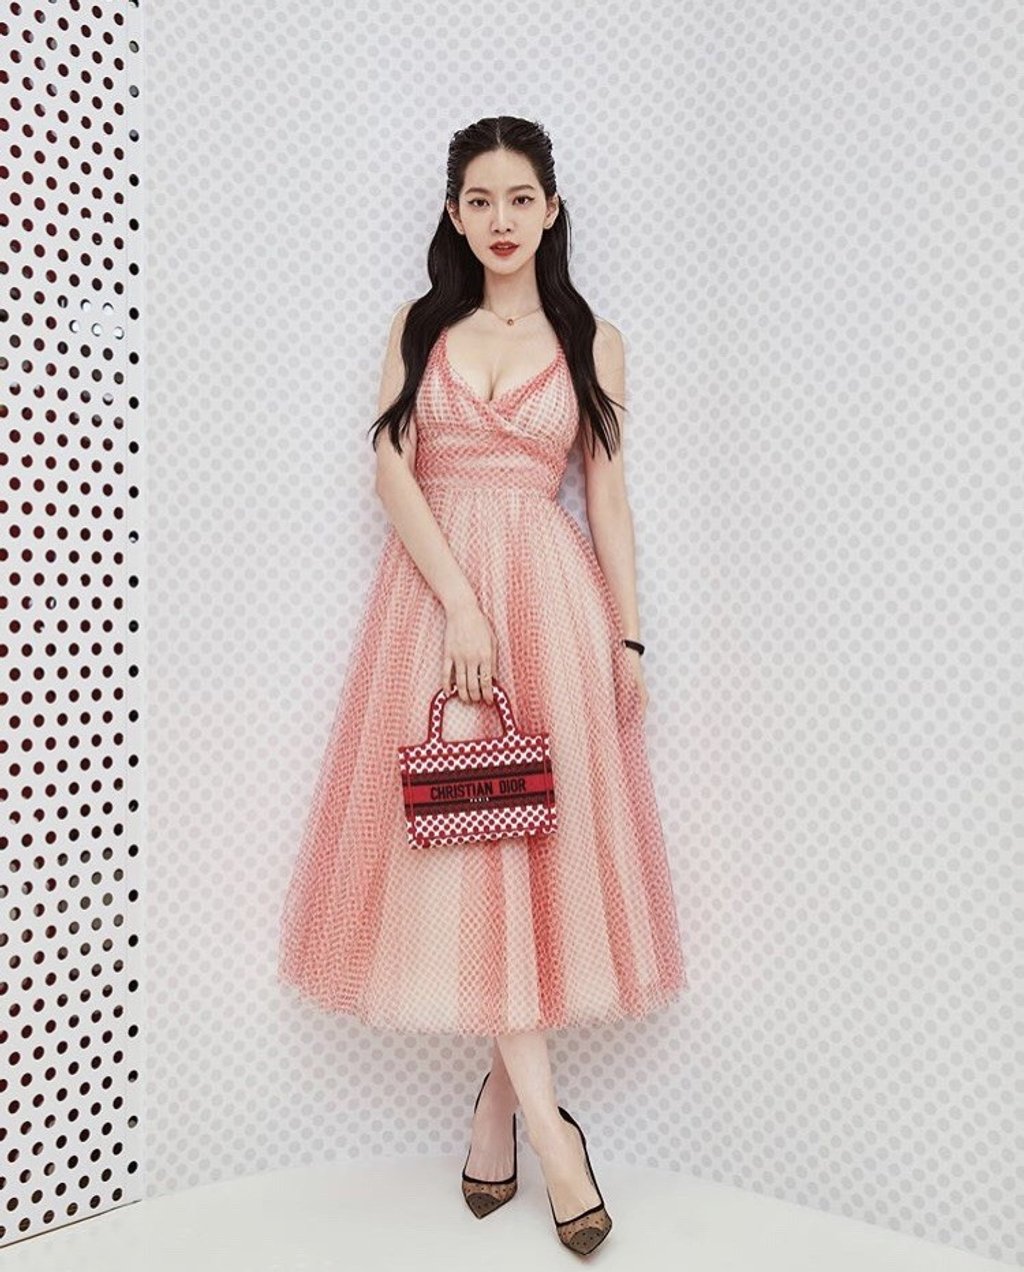 Tăng Chi Kiều khoe sắc vóc gợi cảm khi diện bộ đầm trong BST mới nhất của Dior. Sở hữu chiều cao chuẩn (1m69) và vóc dáng cân đối, đặc biệt là vòng 1 sexy nóng bỏng, nữ diễn viên xứ Đài lấn át cả Angela Baby khi đụng hàng thiết kế này.